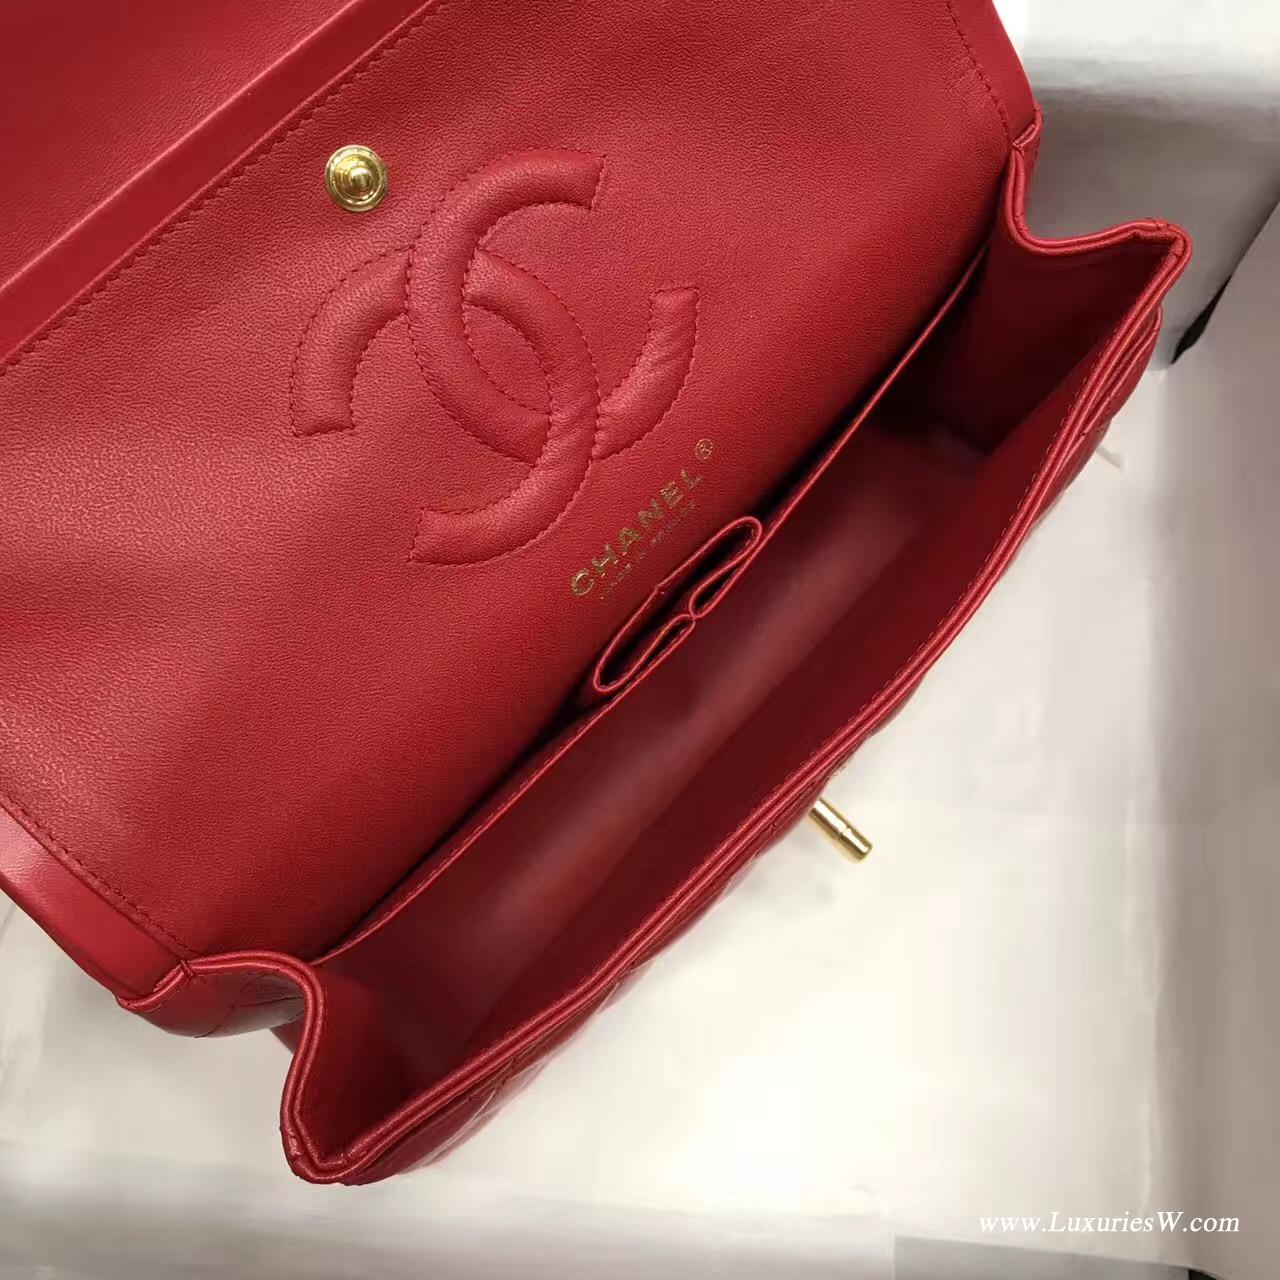 Classic Flap bag A01112菱格鏈條經典口蓋包小羊皮金色紅色